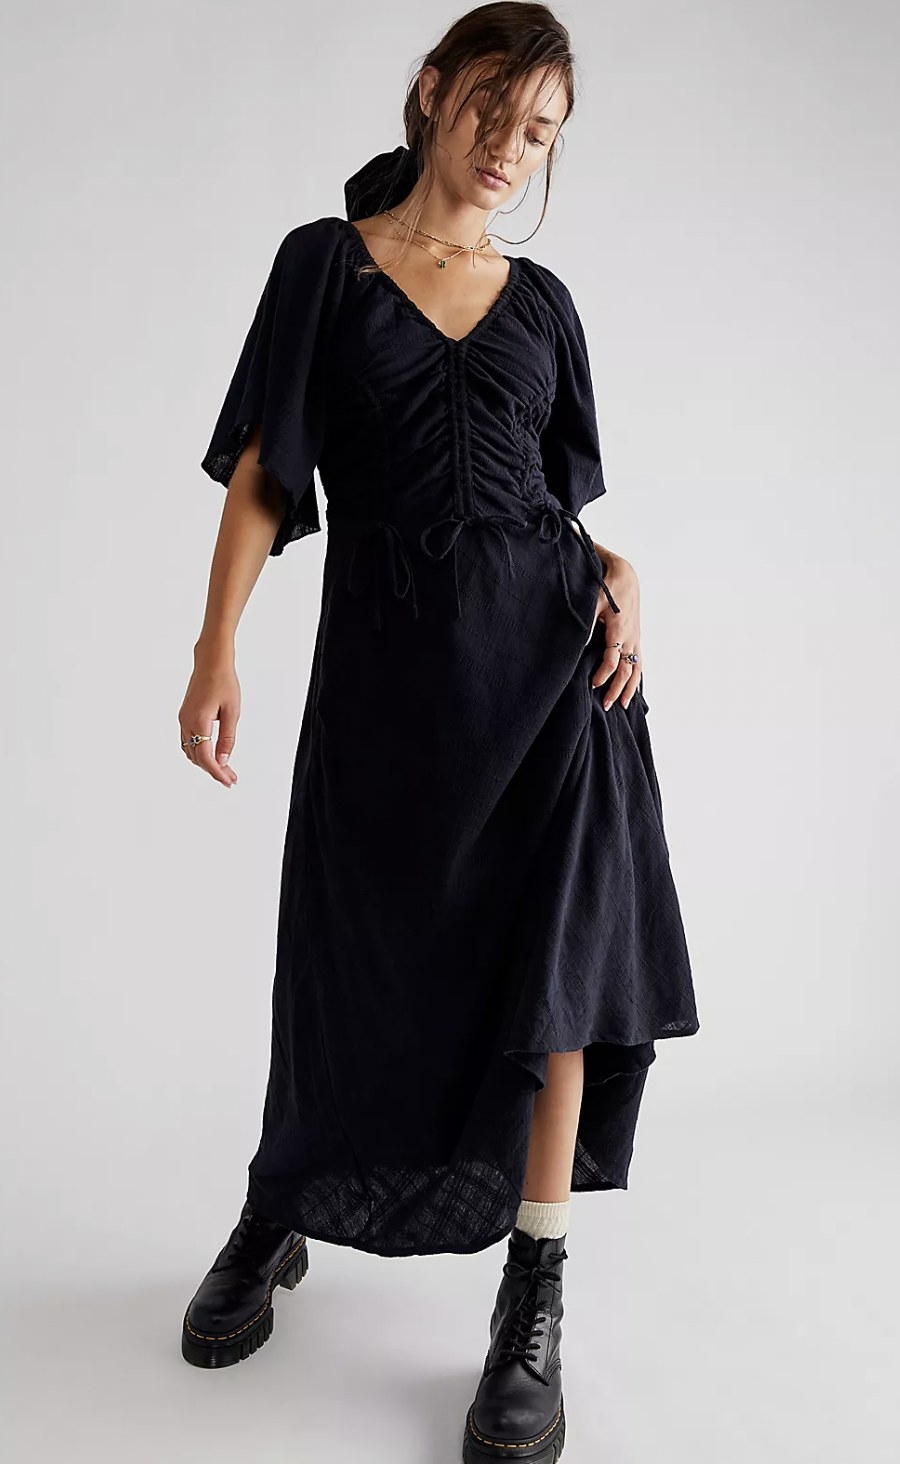 model wears the dress in black